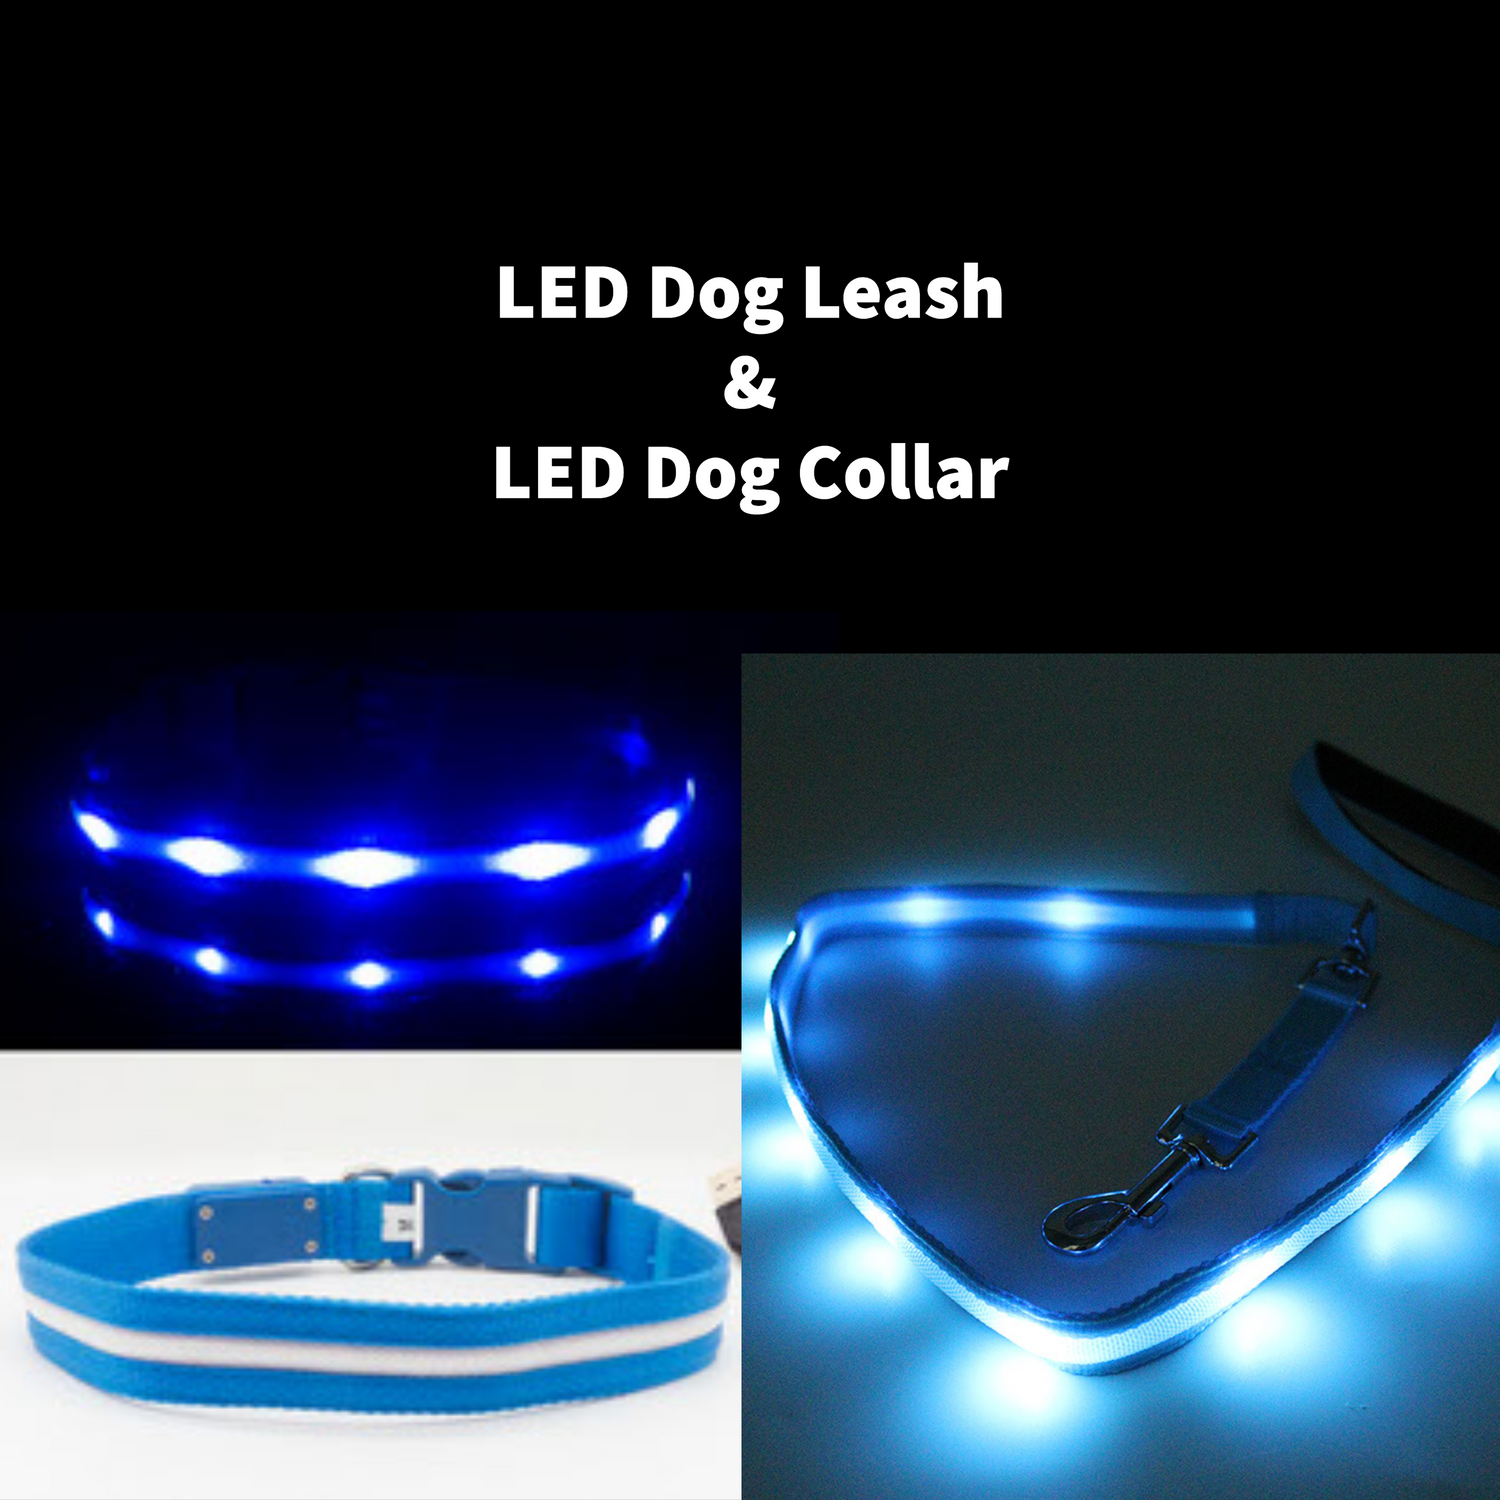 led dog leash and led dog collar